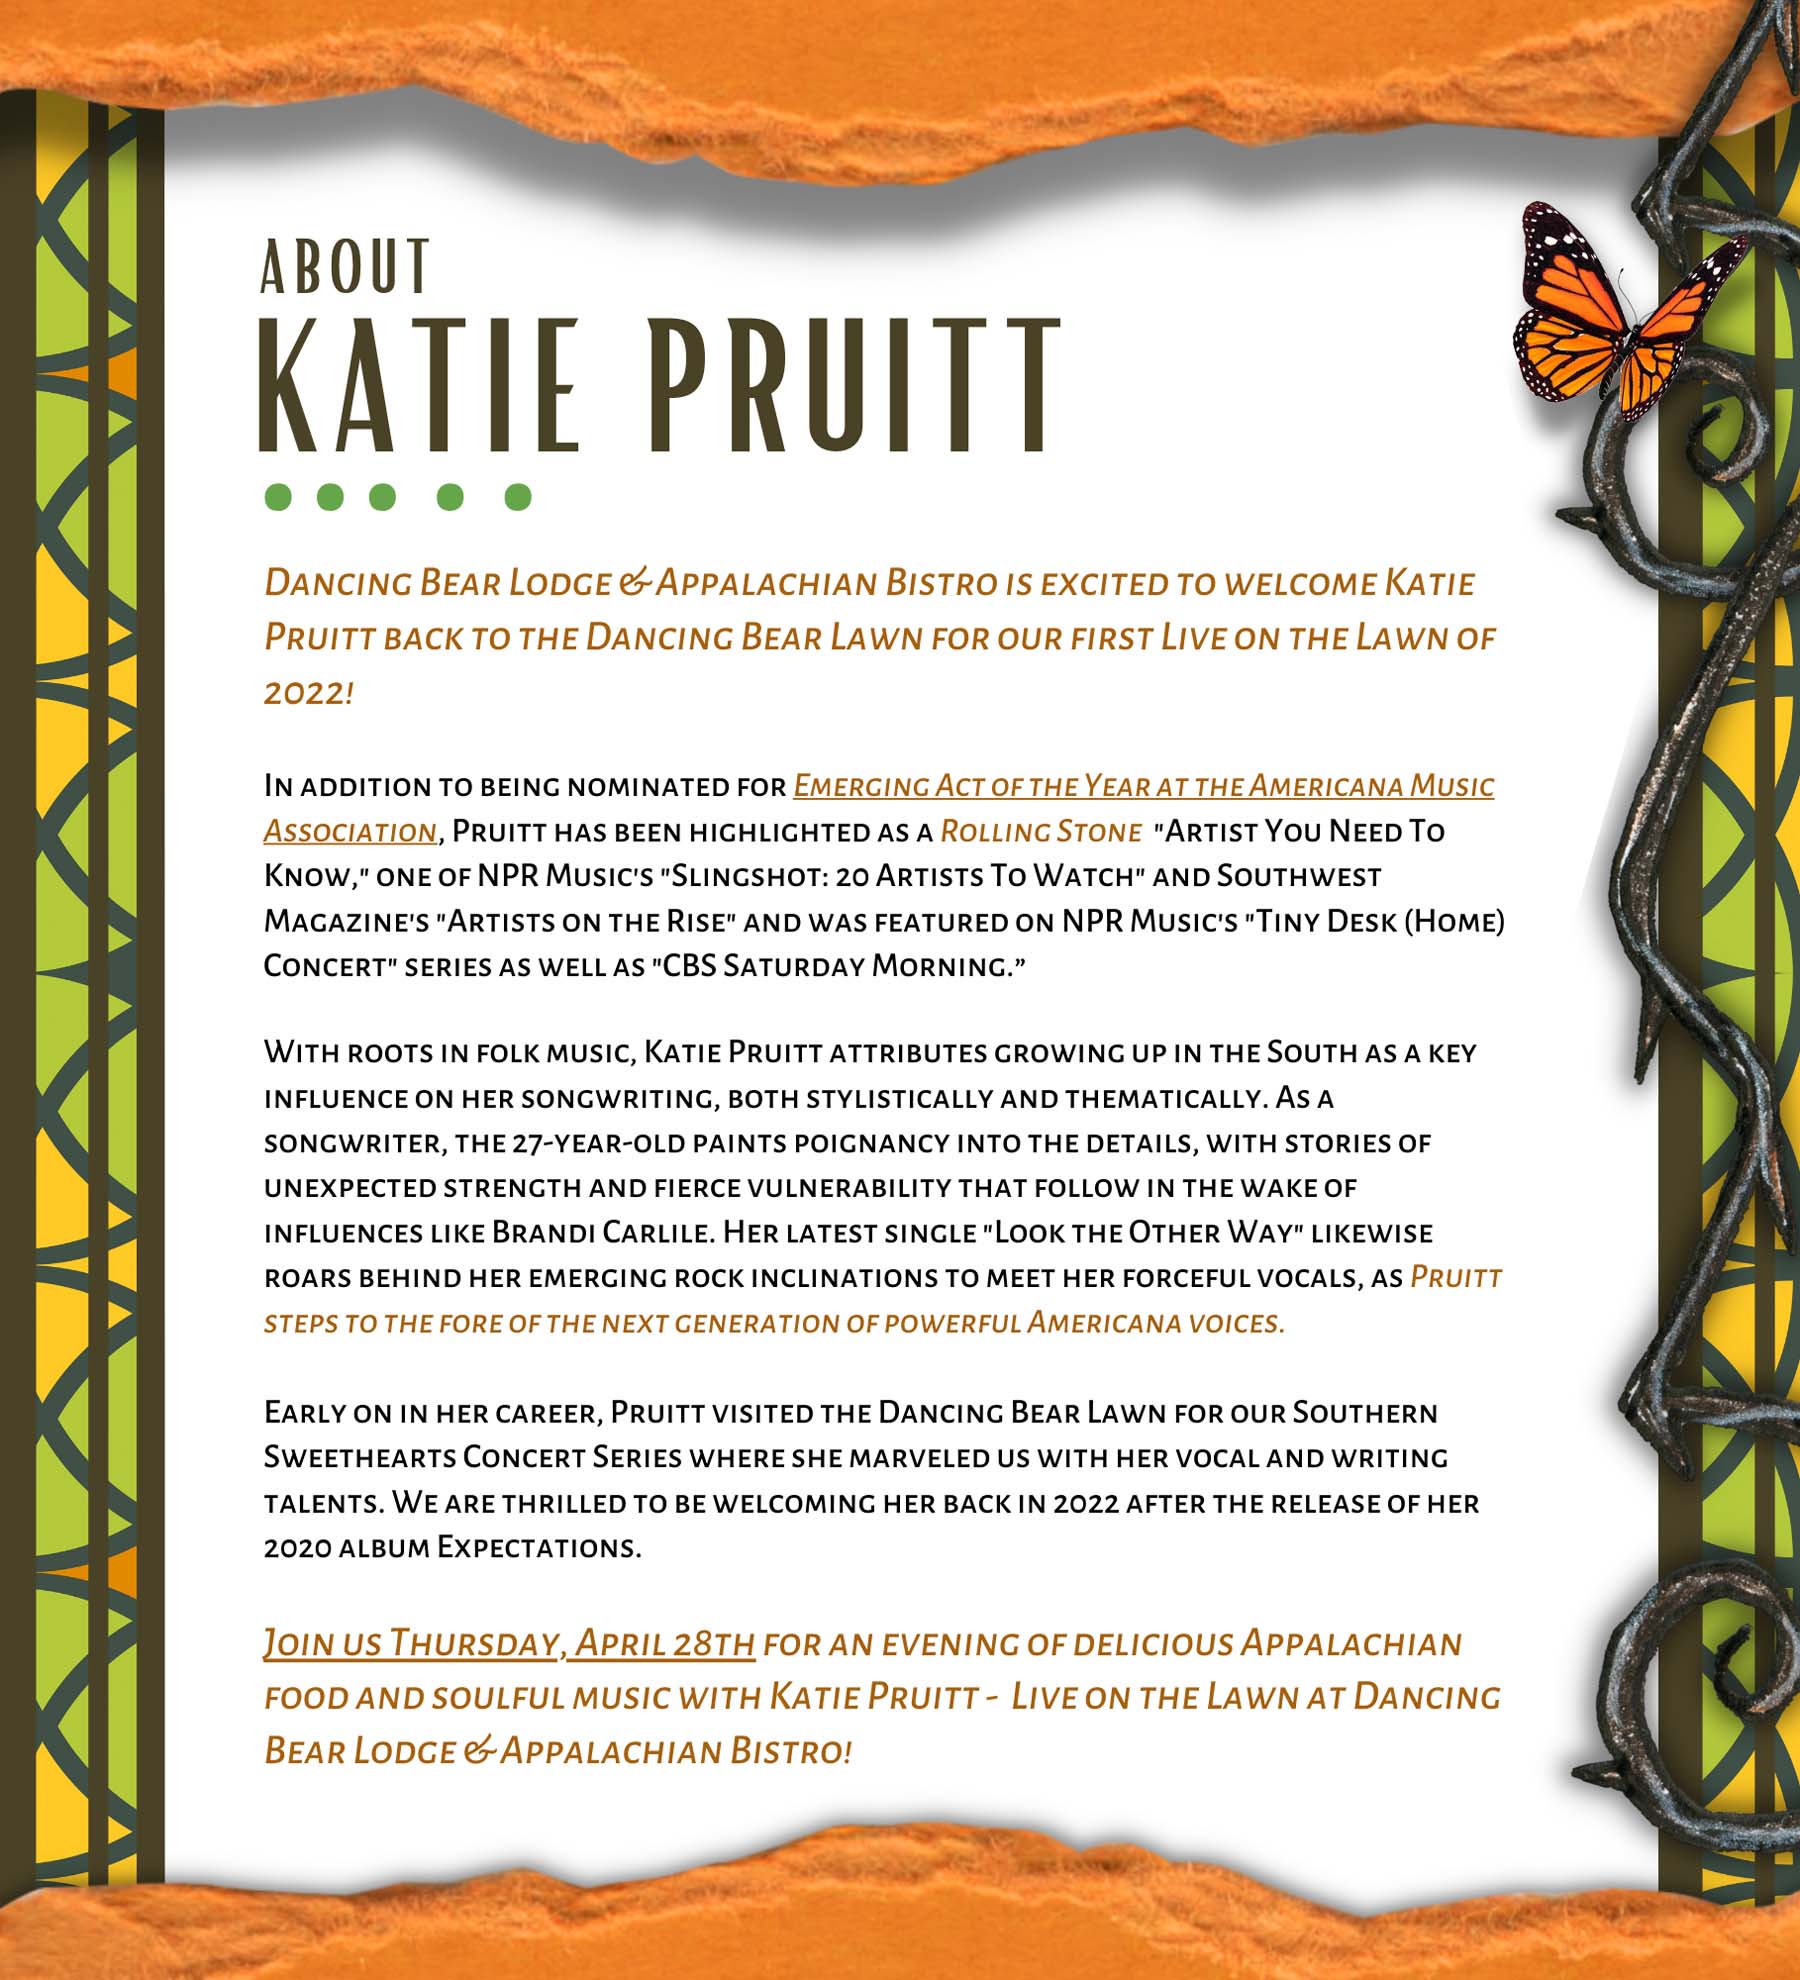 About Katie Pruitt